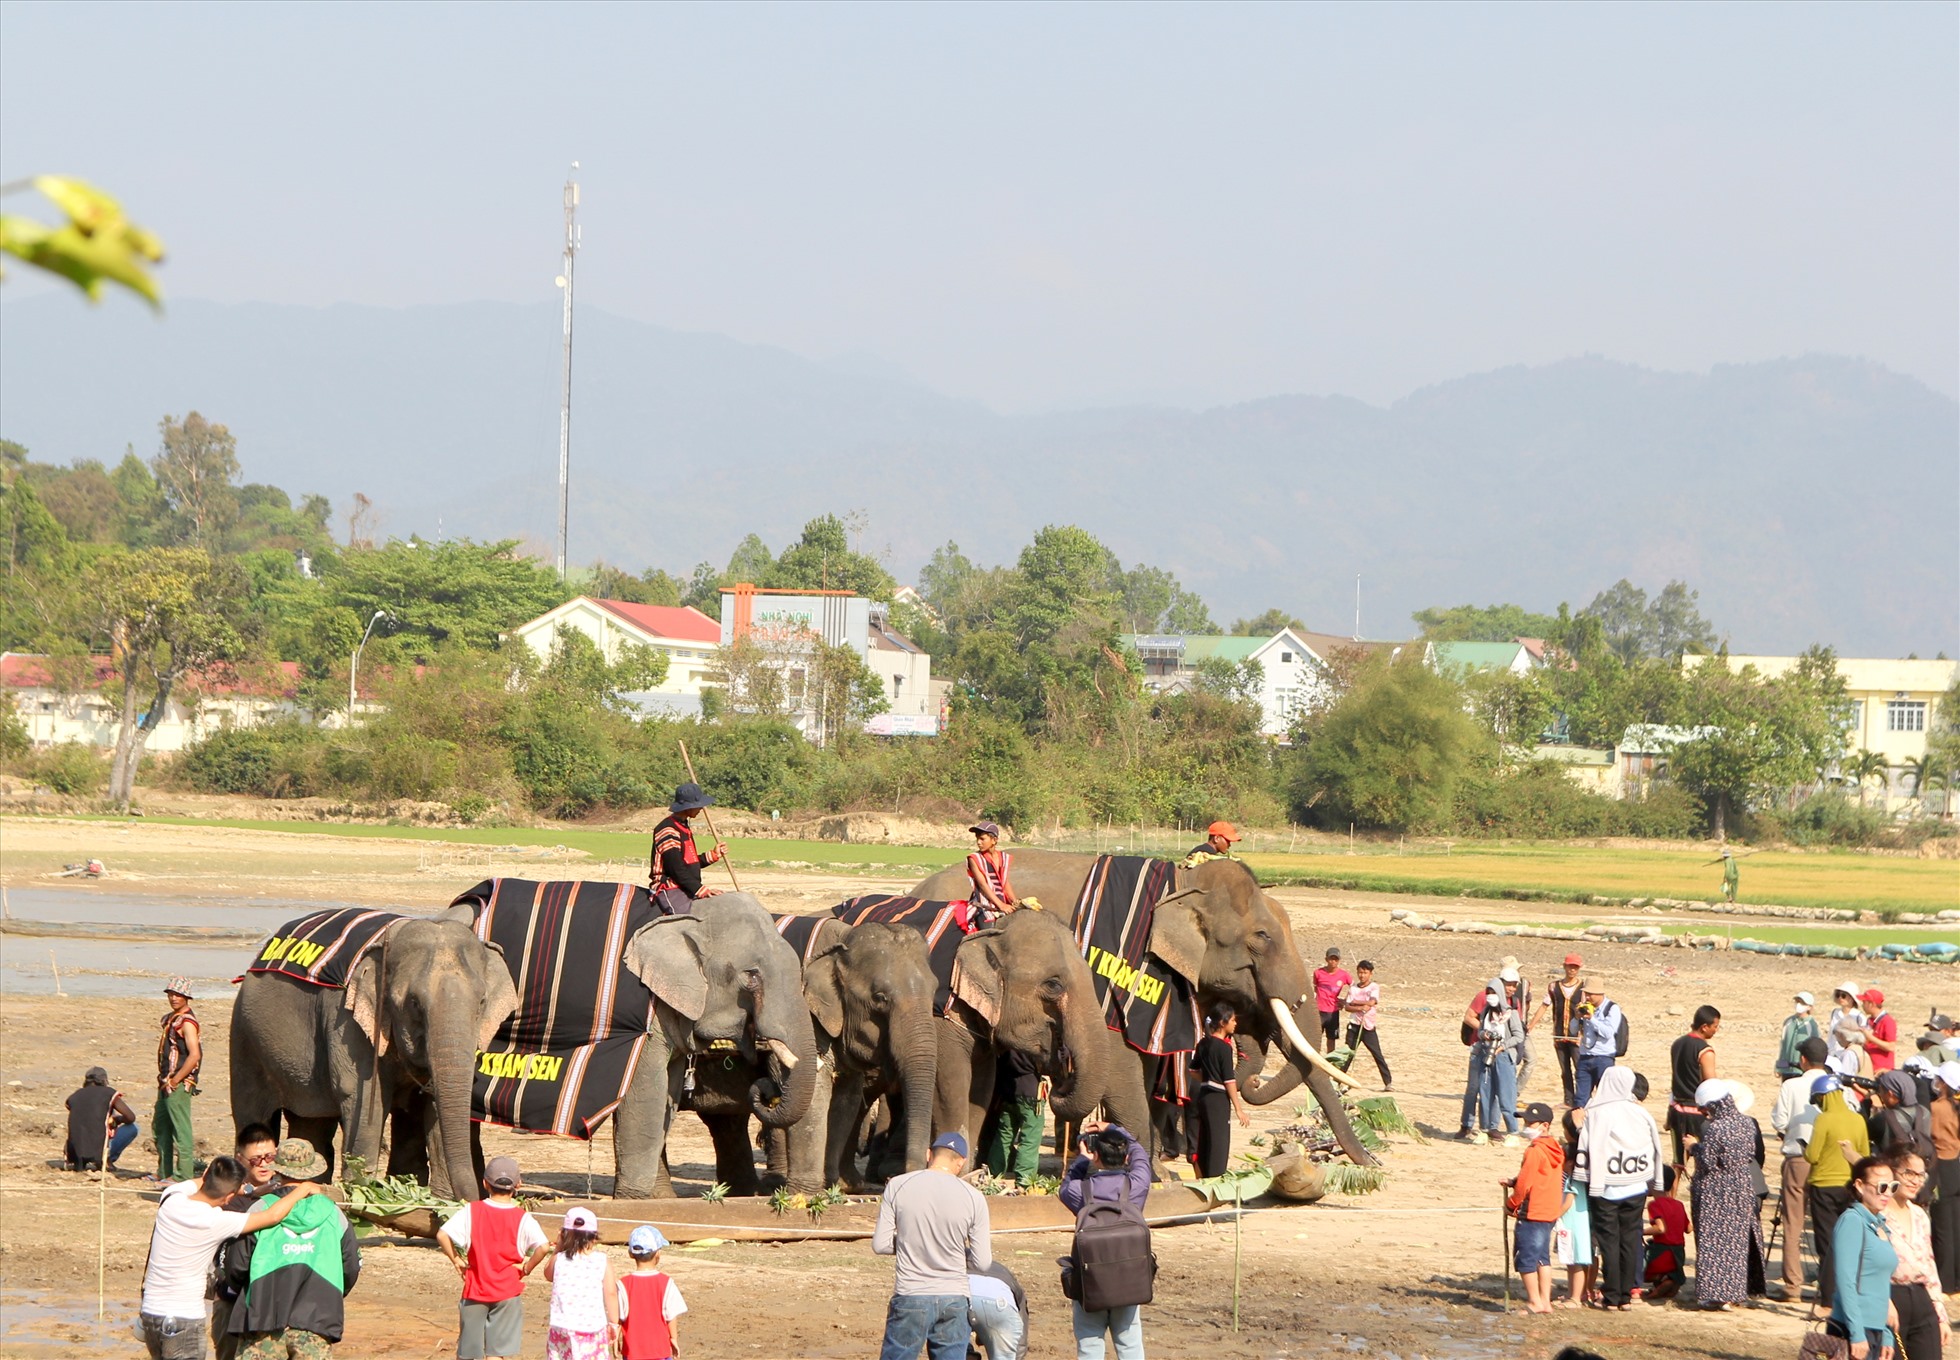 Nhiều khách du lịch, người dân địa phương đến xem tiệc buffet chiêu đãi voi. Ảnh: Phan Tuấn